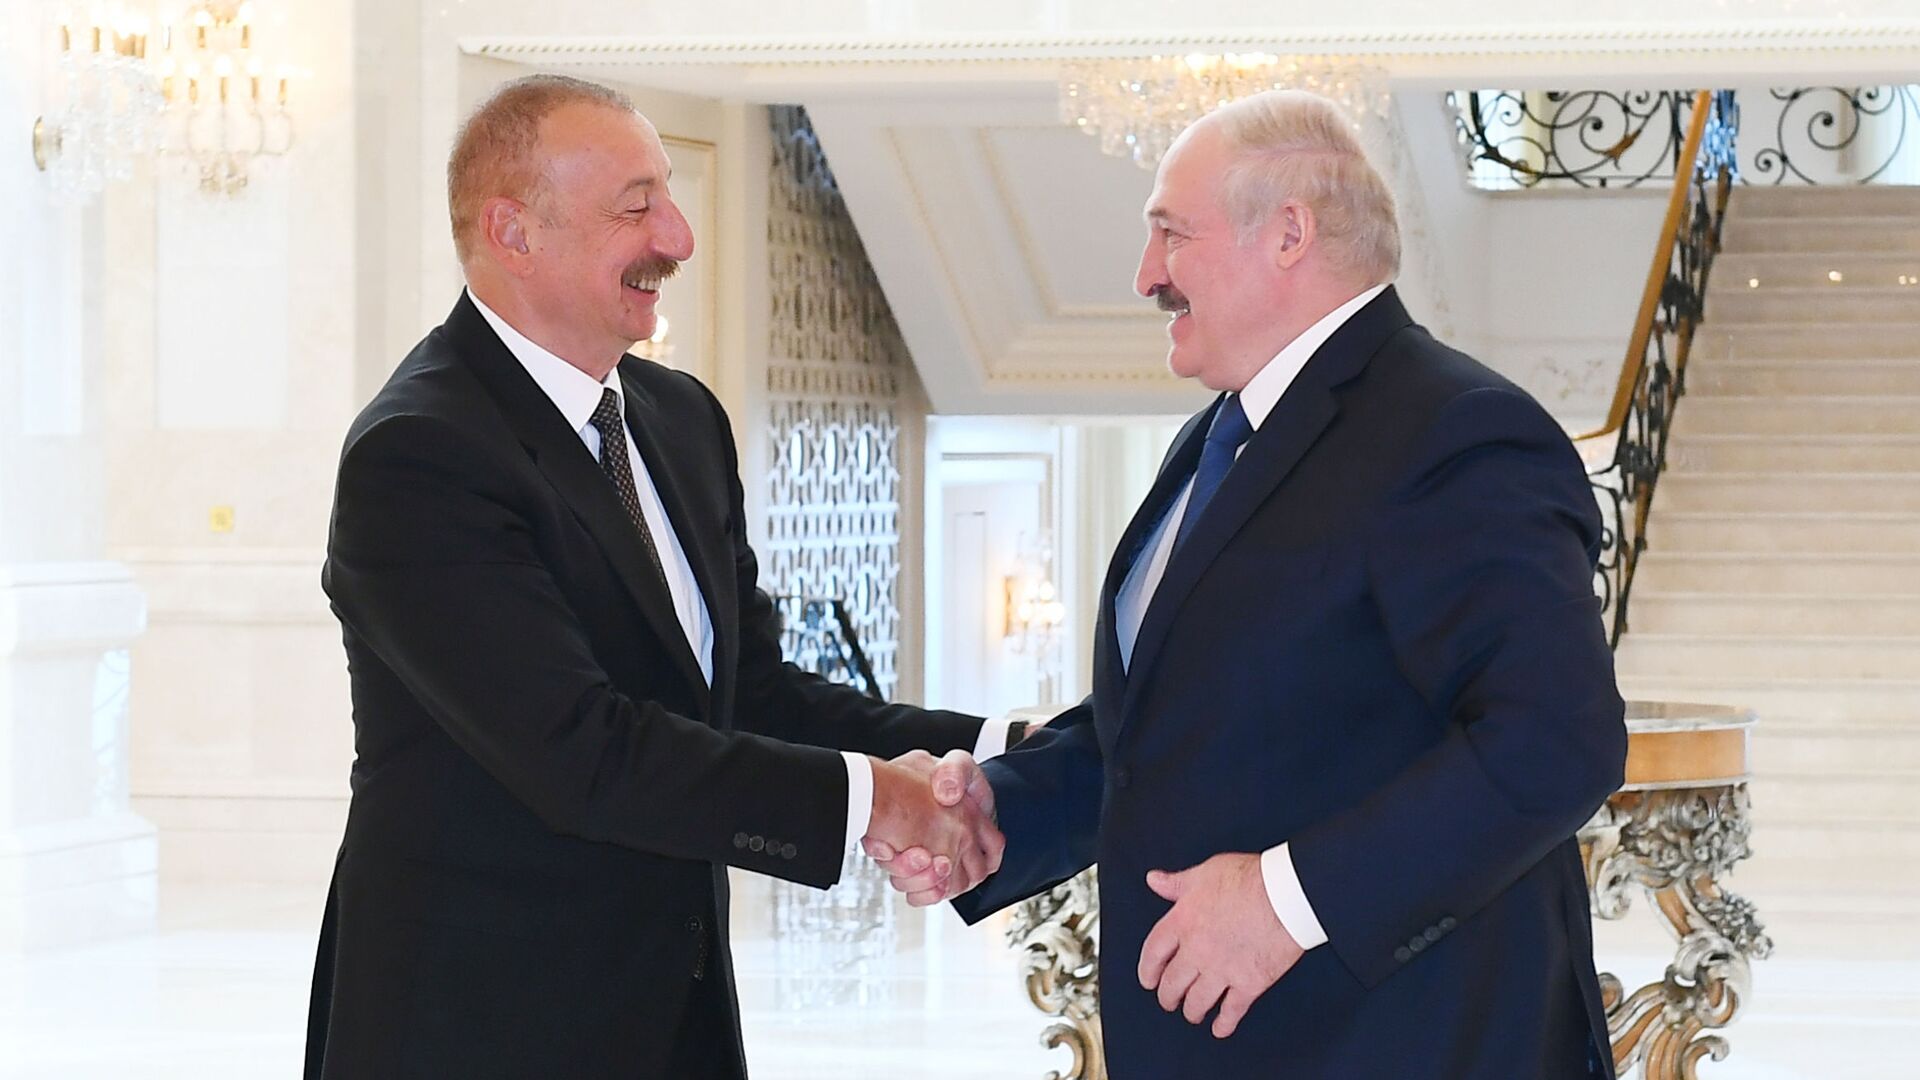 Azərbaycan Prezidenti İlham Əliyev və Belarus Prezidenti Aleksandr Lukaşenko, arxiv şəkli - Sputnik Azərbaycan, 1920, 19.12.2021